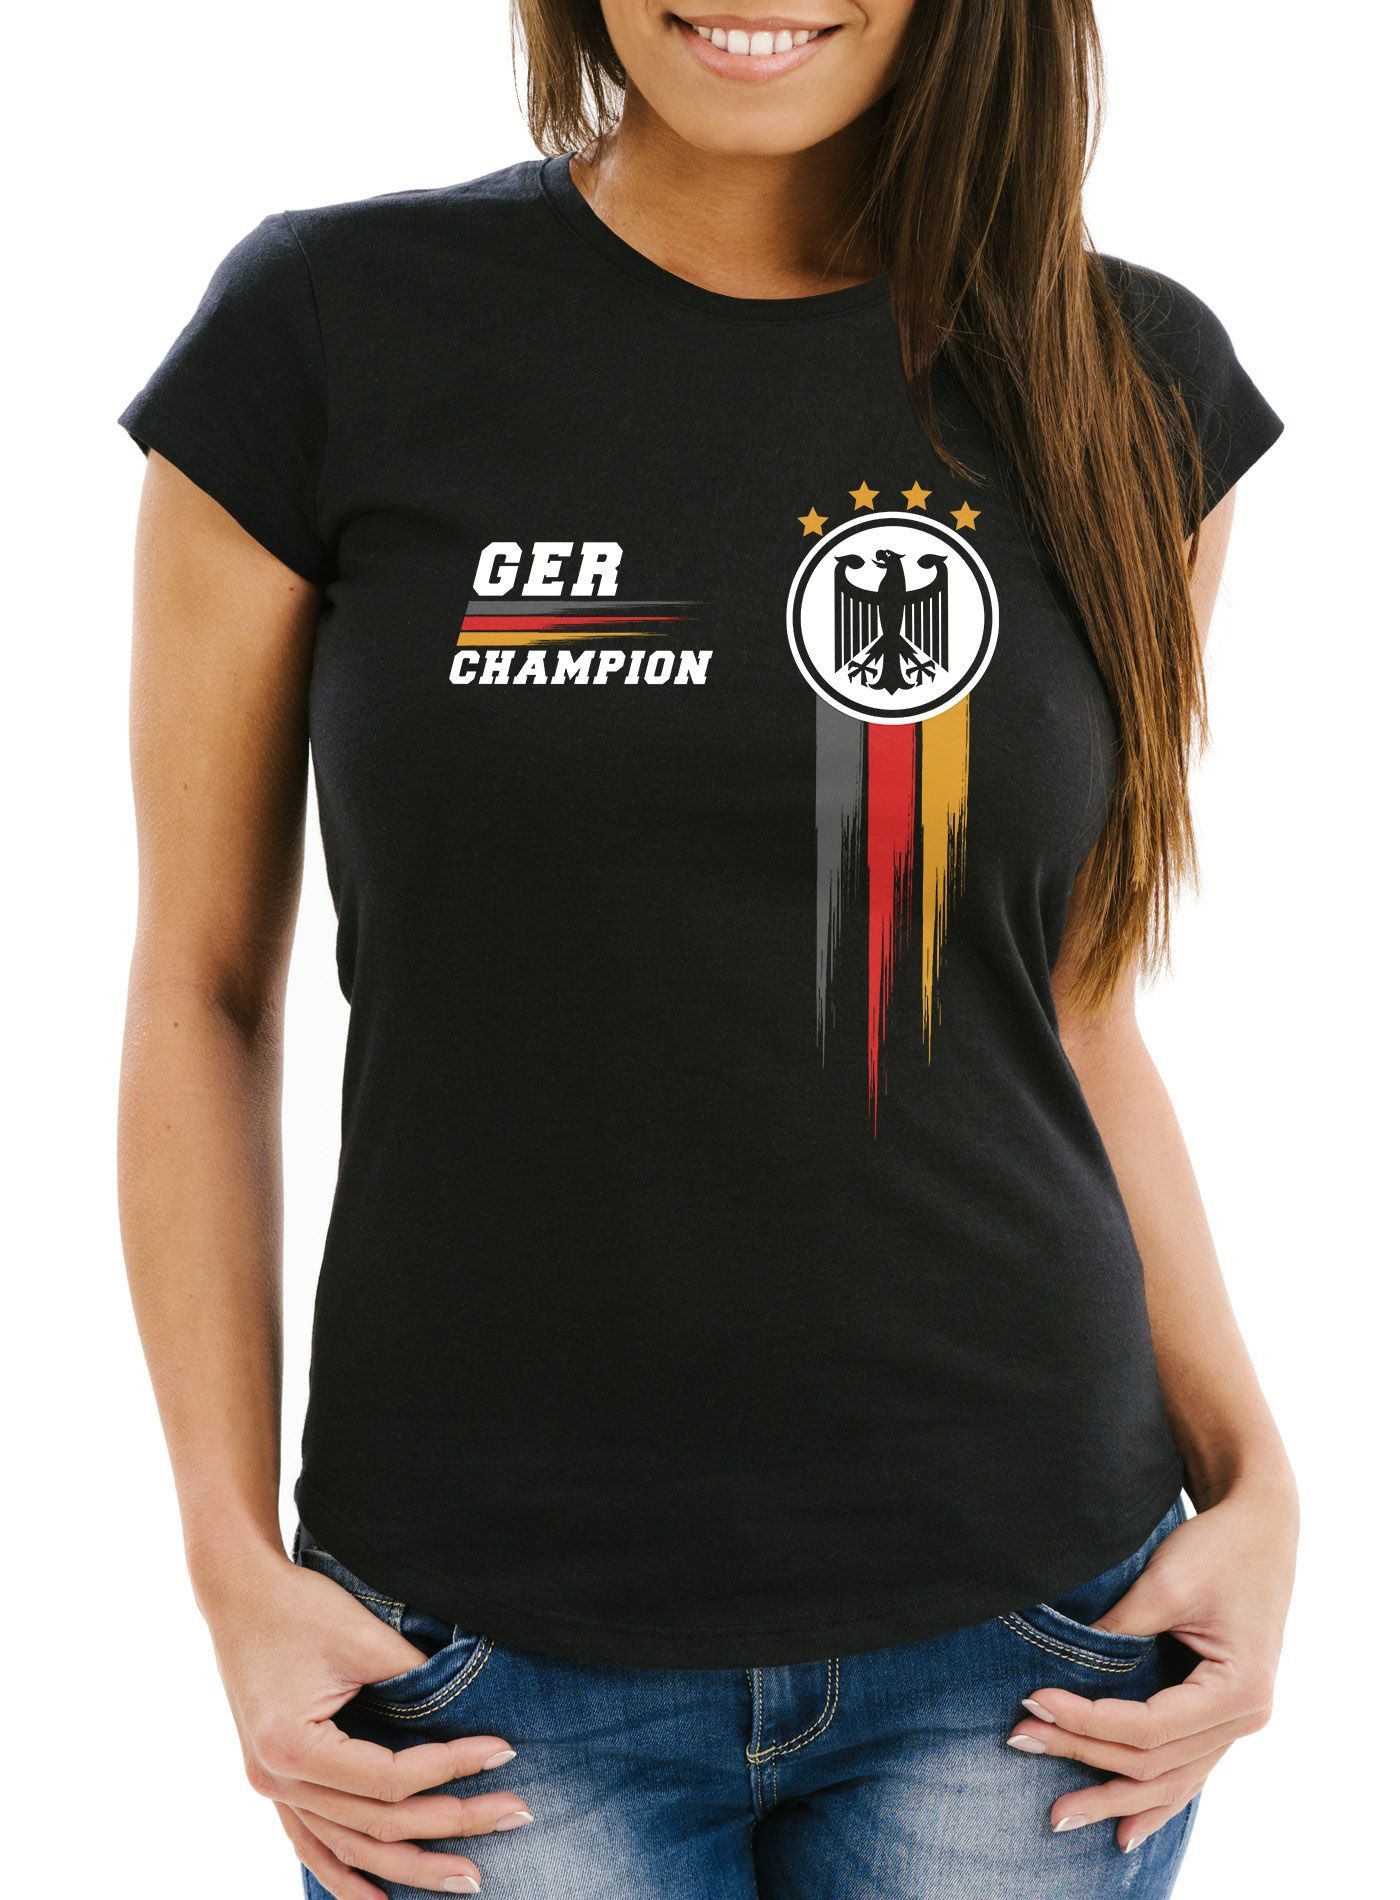 MoonWorks Print-Shirt EM Shirt Damen Deutschland Fußball Fanshirt Champion Germany mit Print